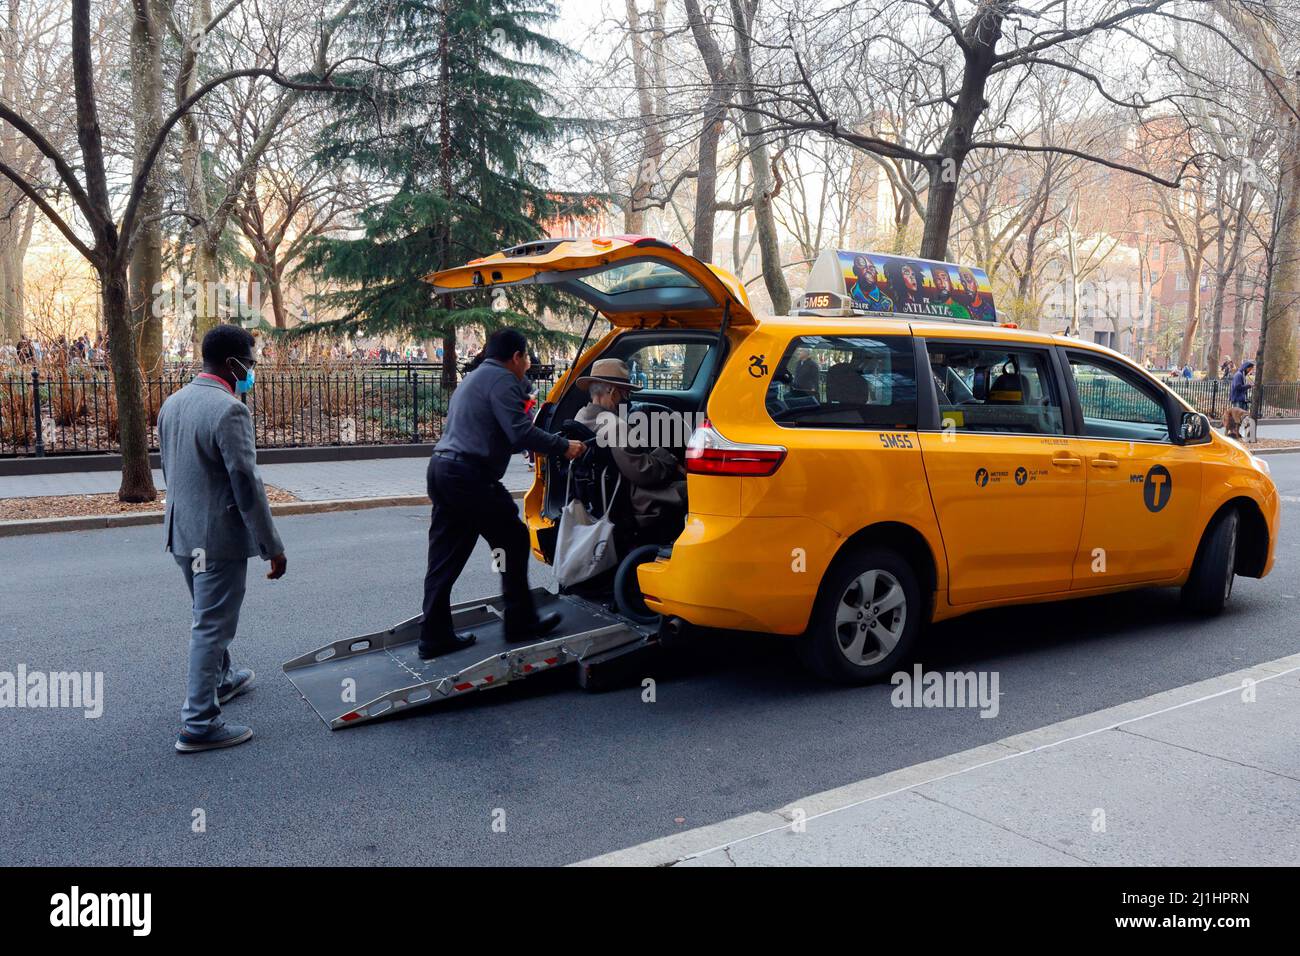 Un taxista de la ciudad de Nueva York ayuda a un usuario en silla de ruedas a entrar en un taxi amarillo medallón de la ciudad de Nueva York con una rampa accesible para sillas de ruedas en la parte trasera. Foto de stock